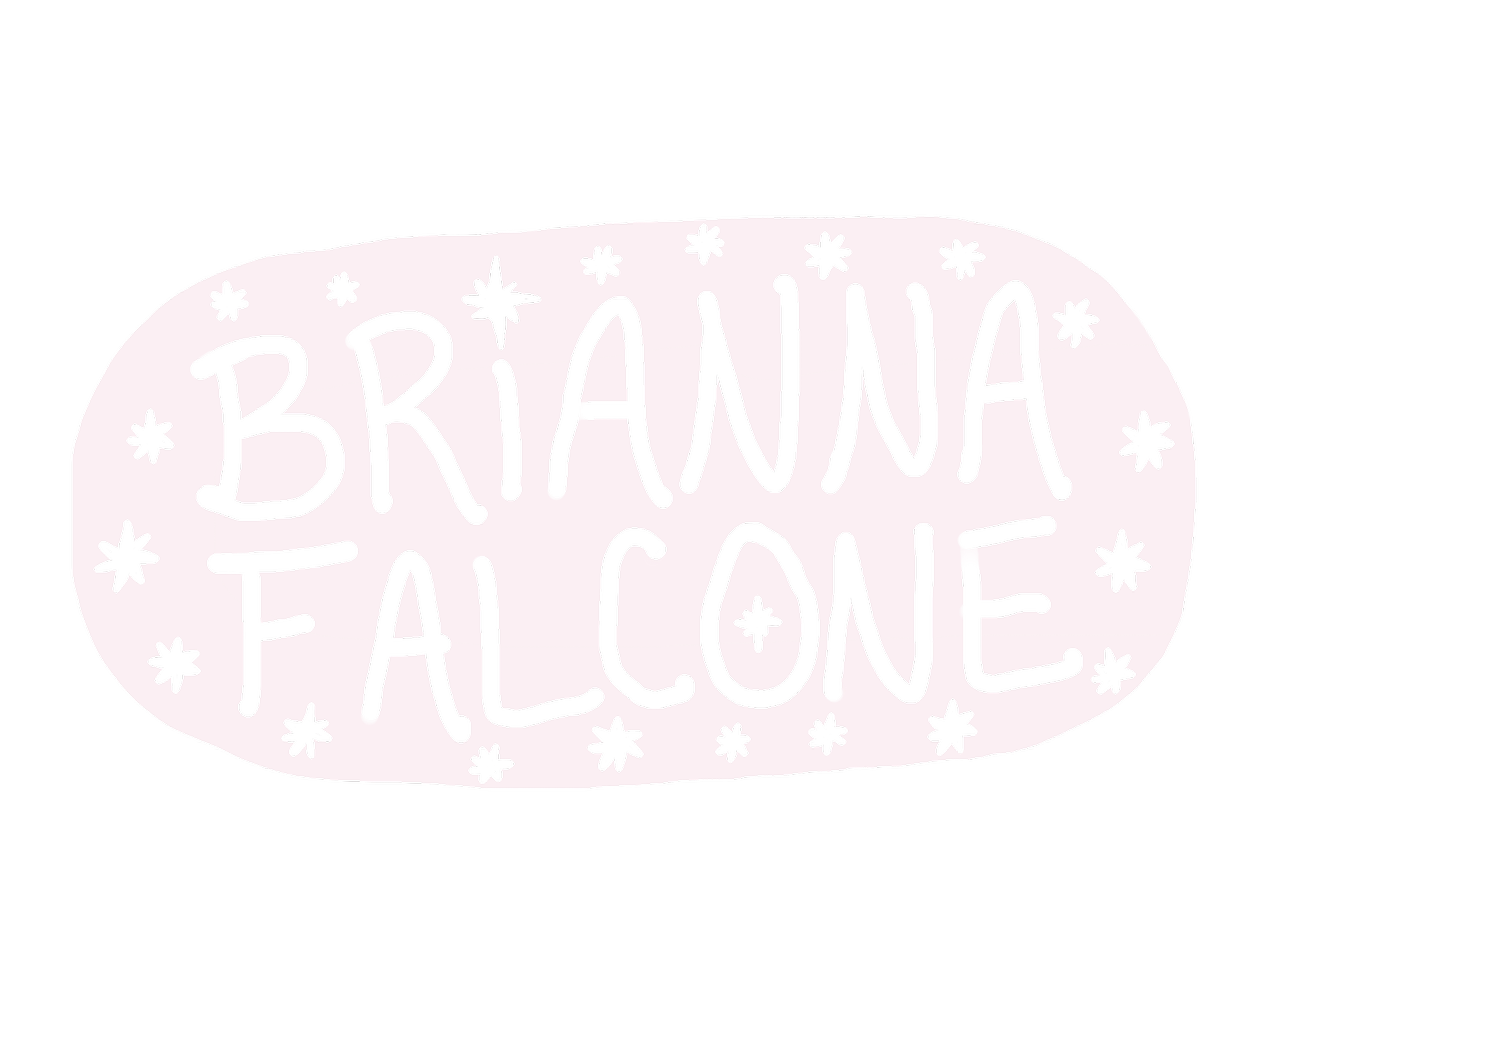 Brianna Falcone